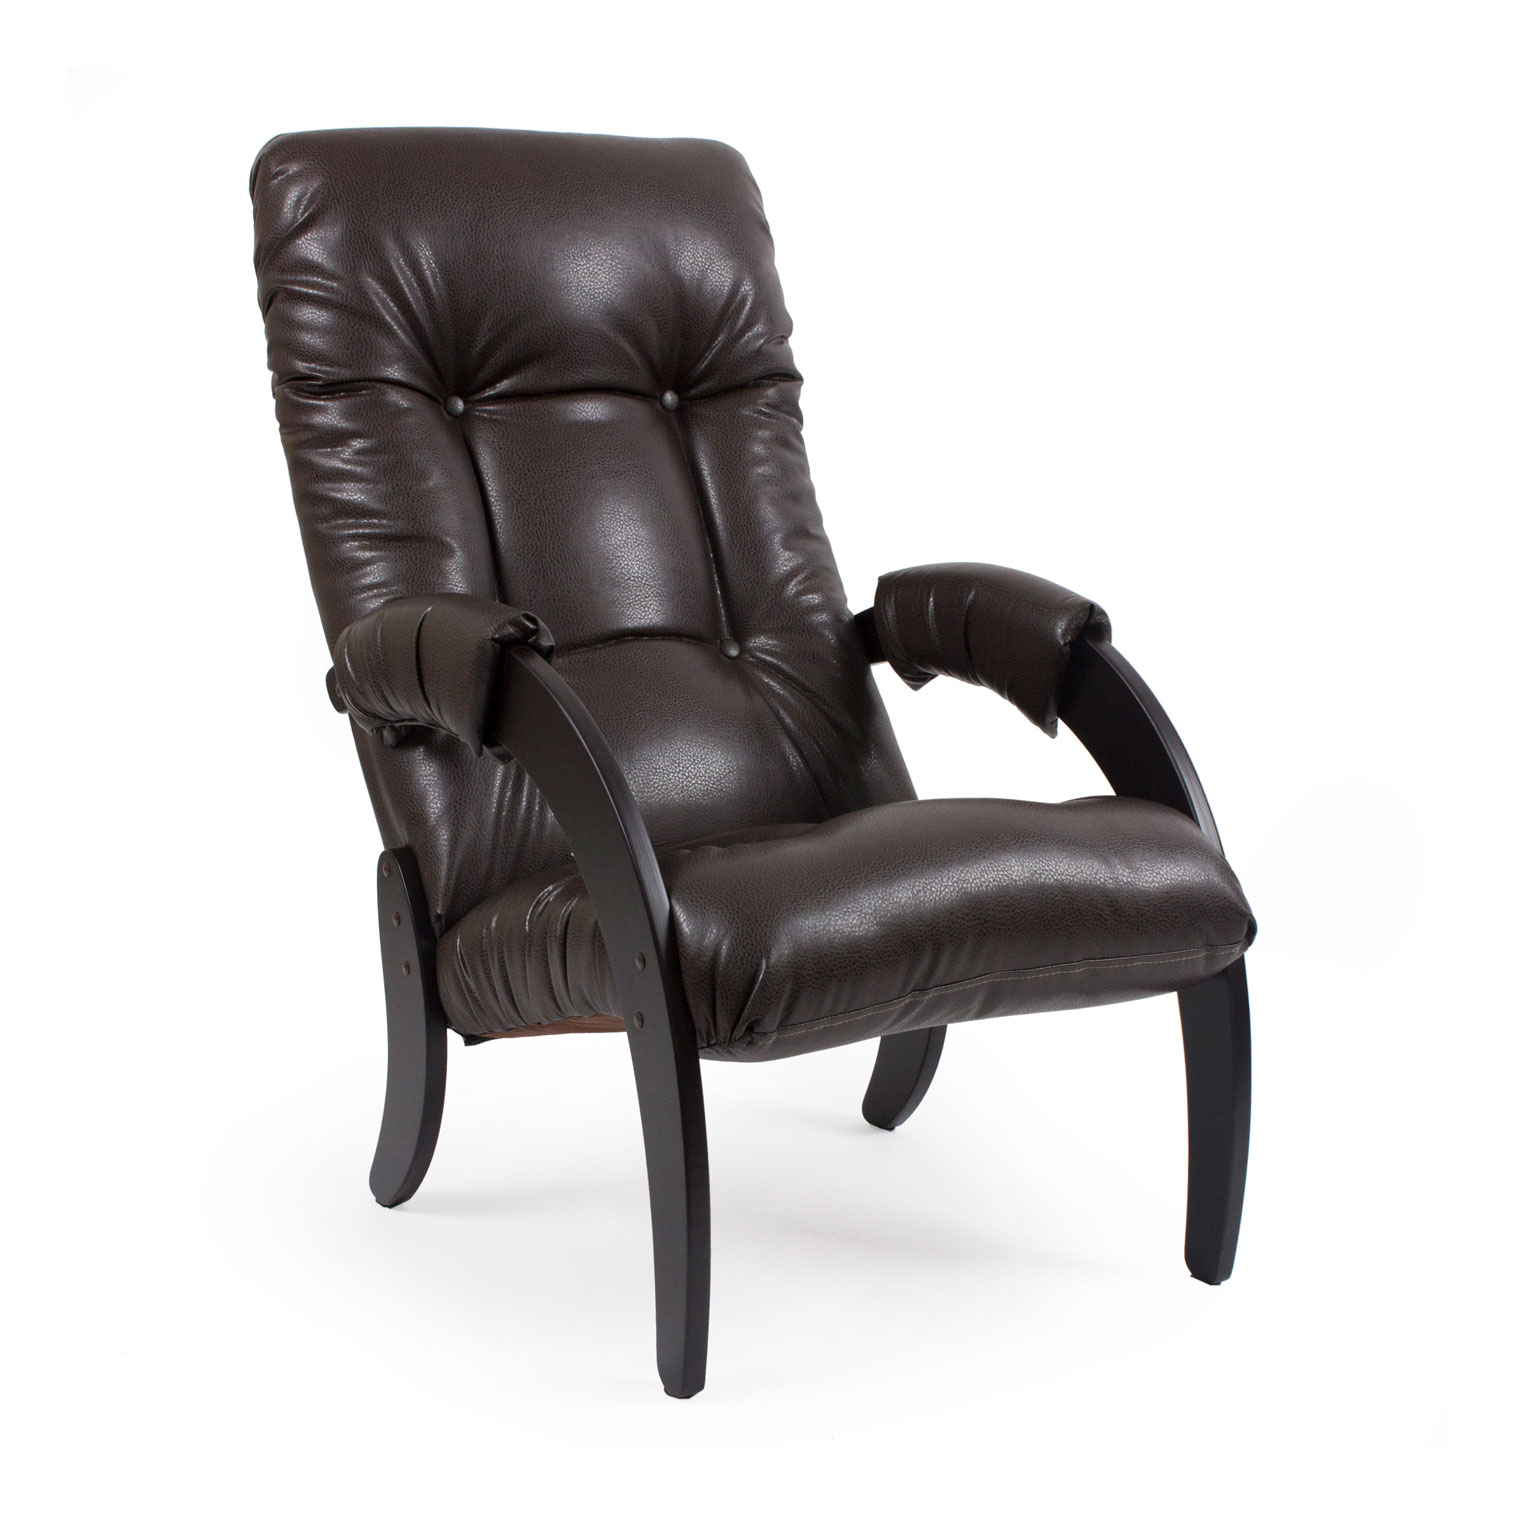 фото Кресло с подлокототниками комфорт-мебель (013.061)